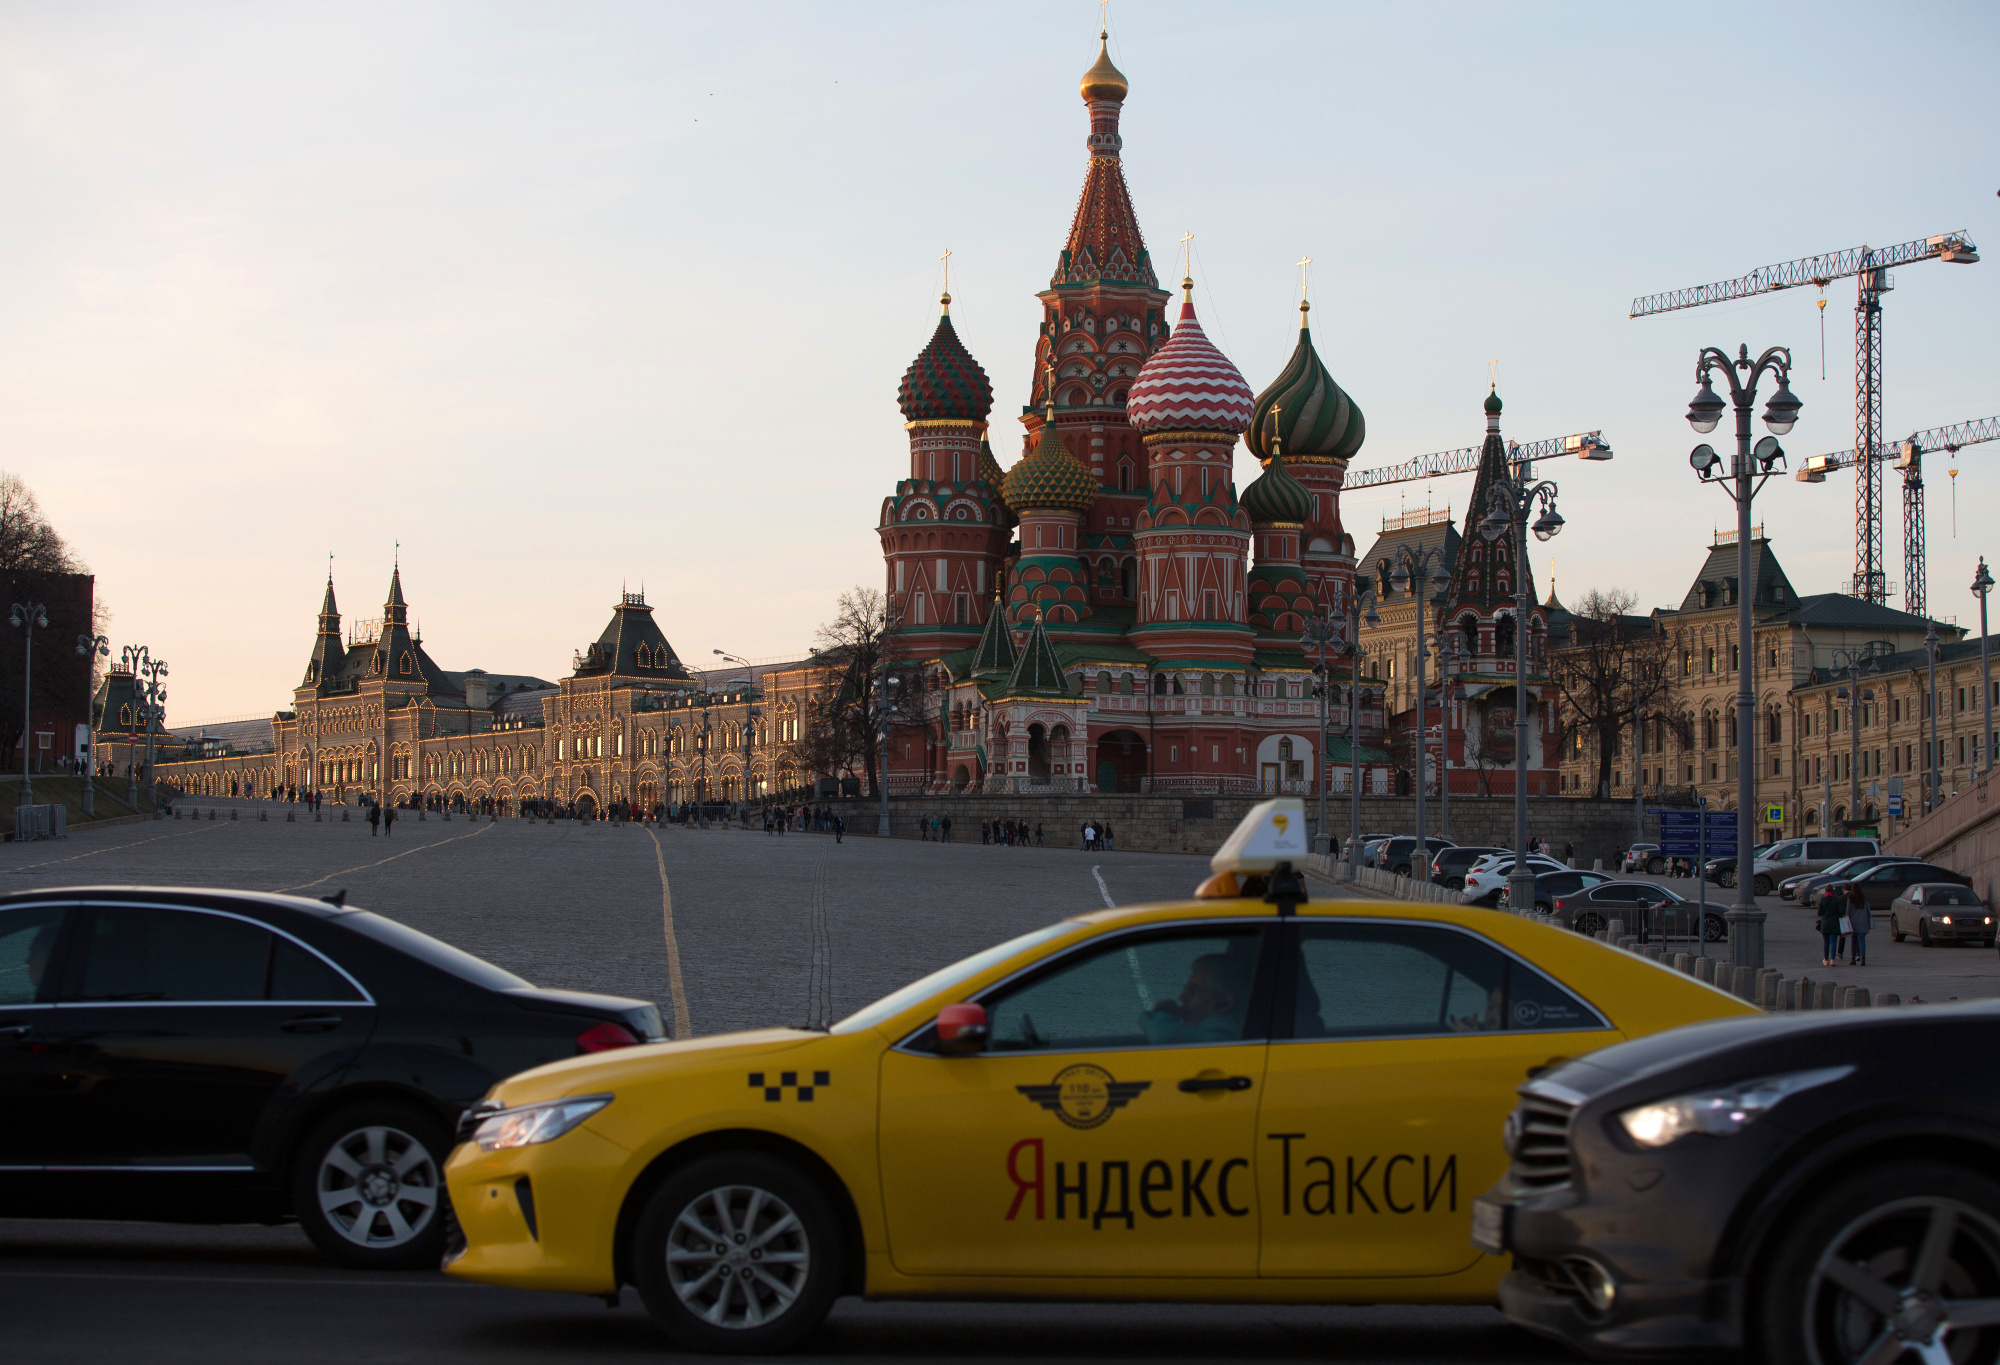 Яндекс такси Москва